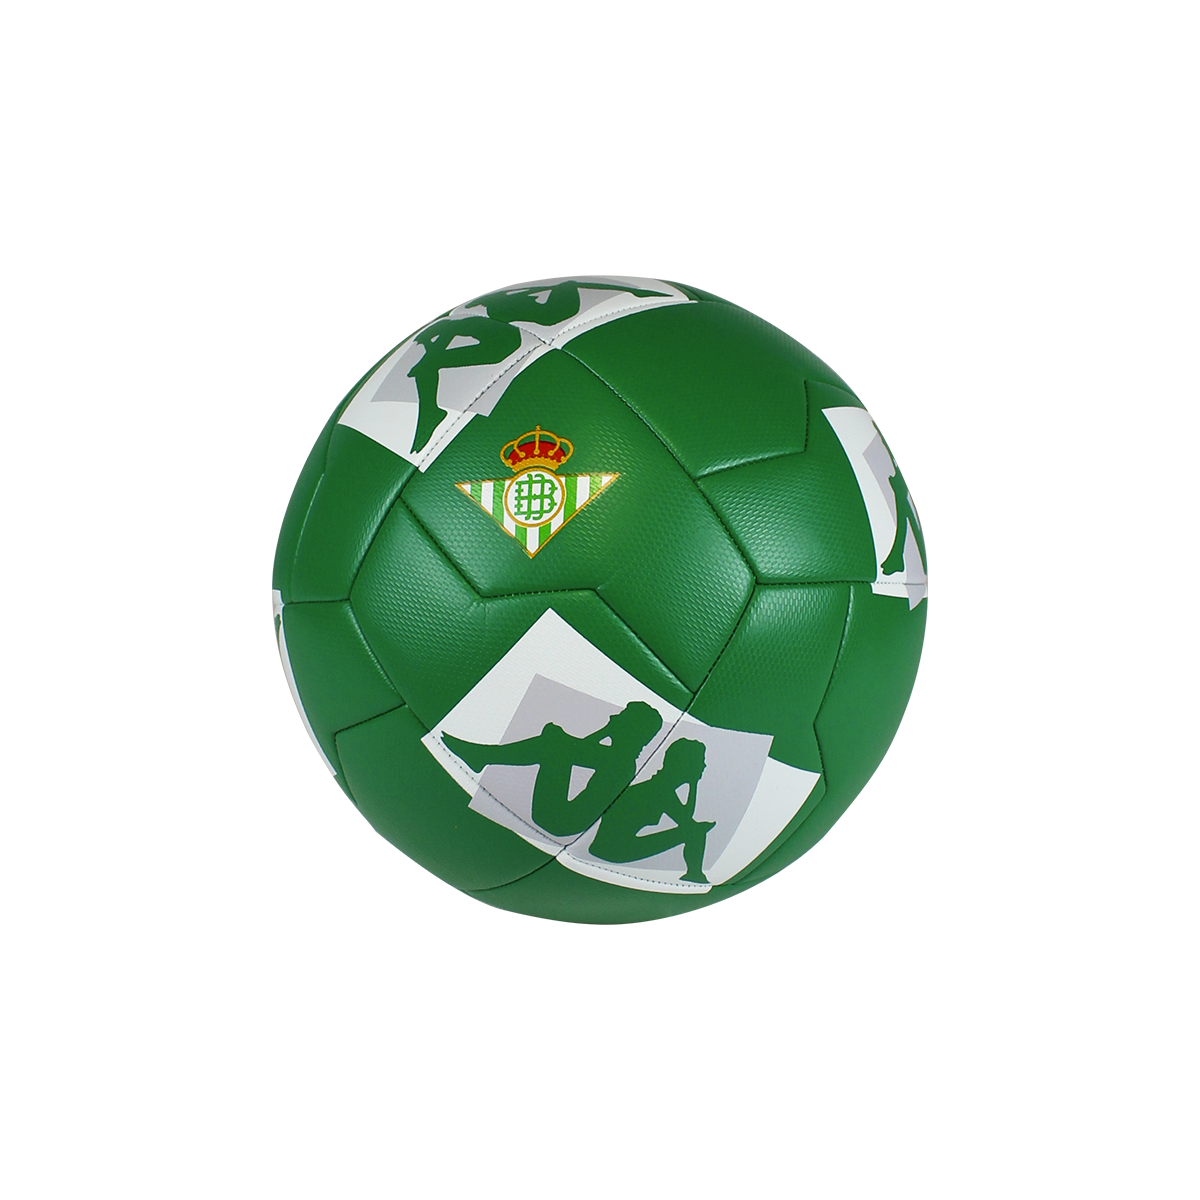 Balón de fútbol Player 20.3 Real Betis Balompié unisex Verde - Imagen 1